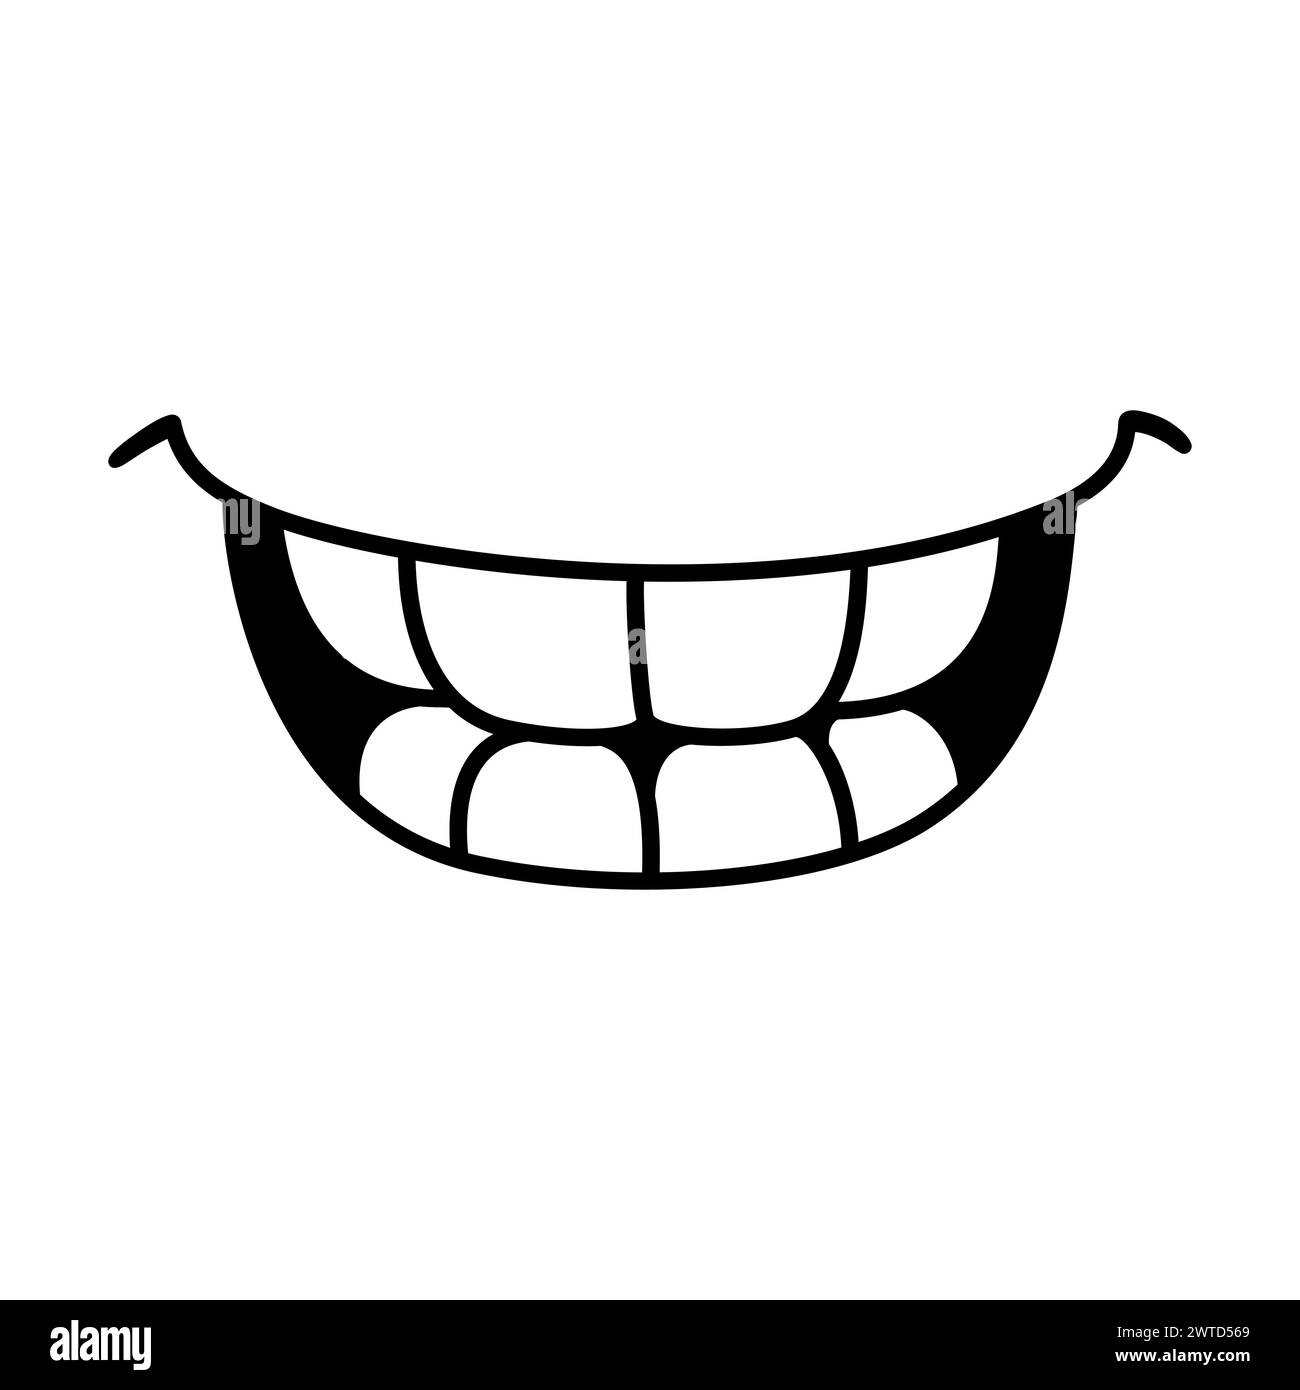 Bocca sorridente che mostra i denti, semplice disegno di doodle. Semplice icona a forma di cartone in bianco e nero. Illustrazione vettoriale disegnata a mano. Illustrazione Vettoriale